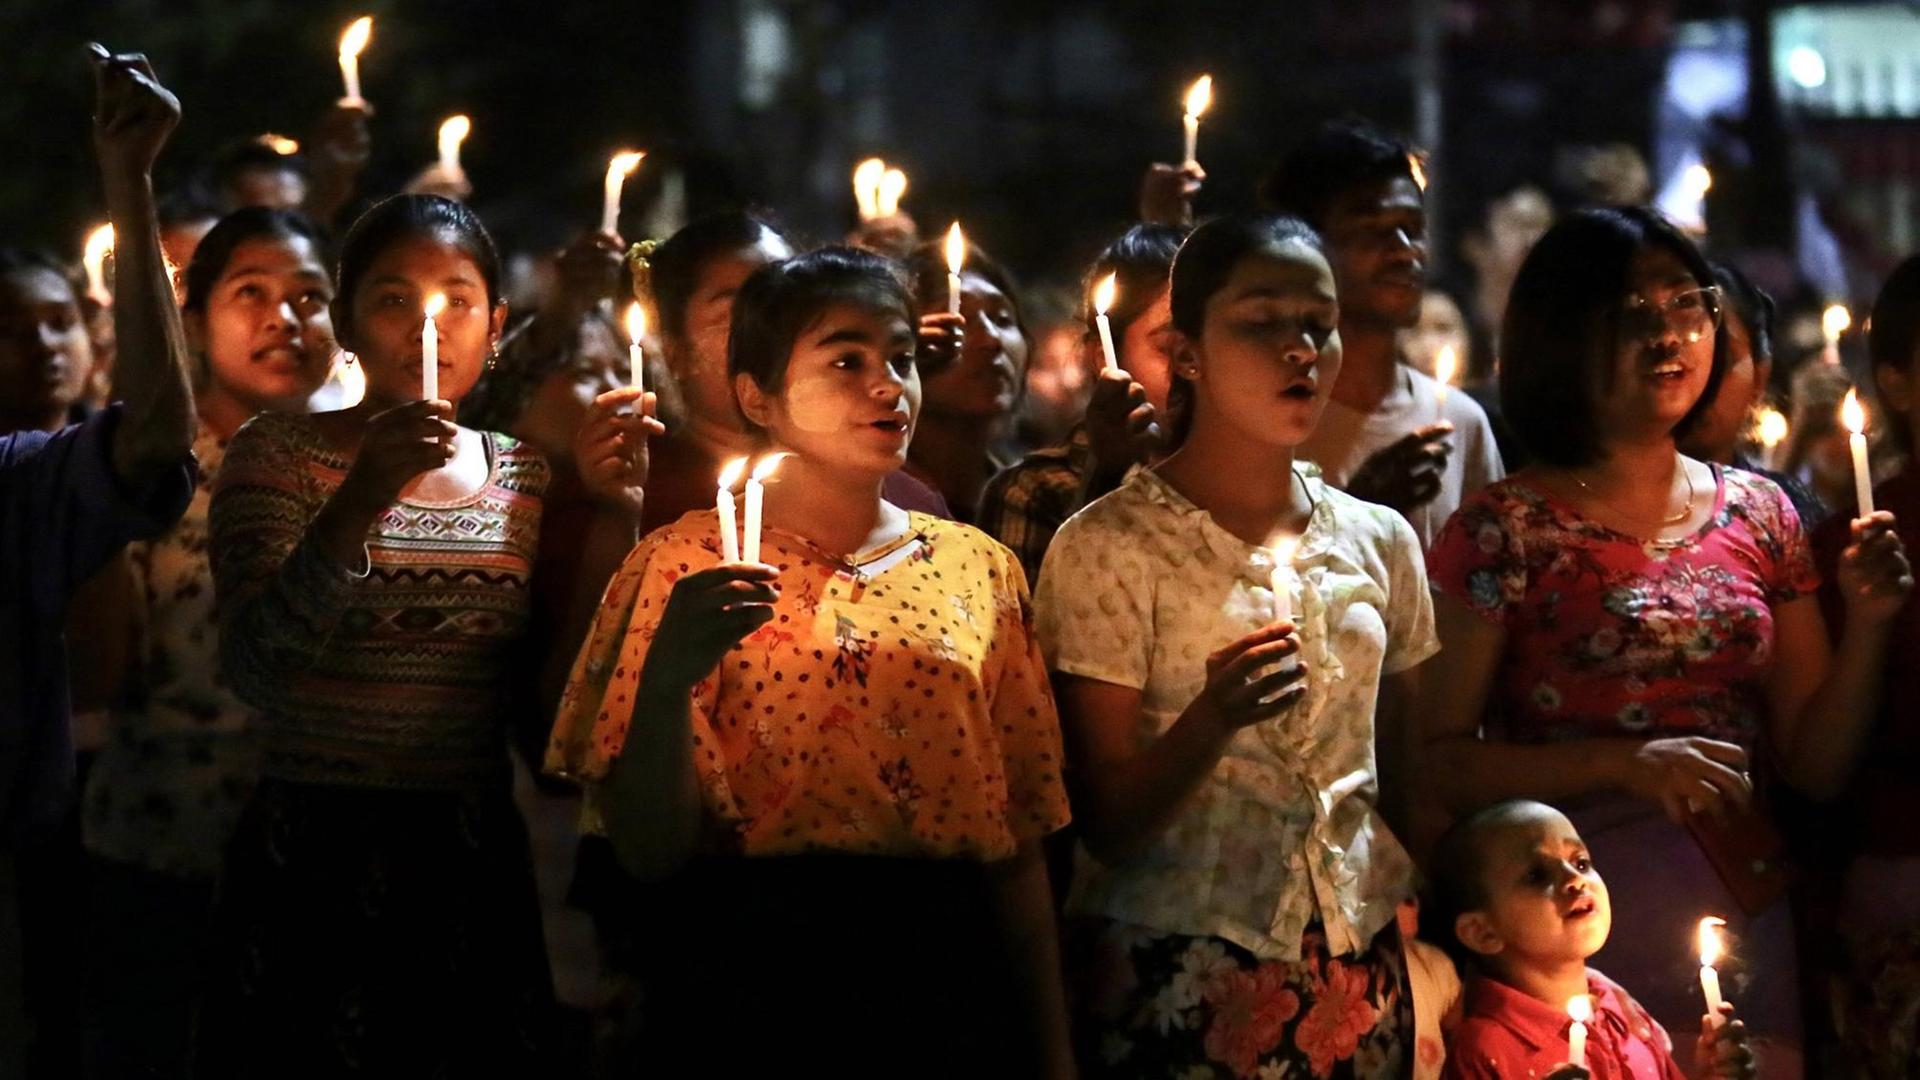 Auf dem Foto sind junge Menschen zu sehen, die im Rahmen der Proteste gegen die Militärregierung in Myanmar, nachts Kerzen hochhalten.